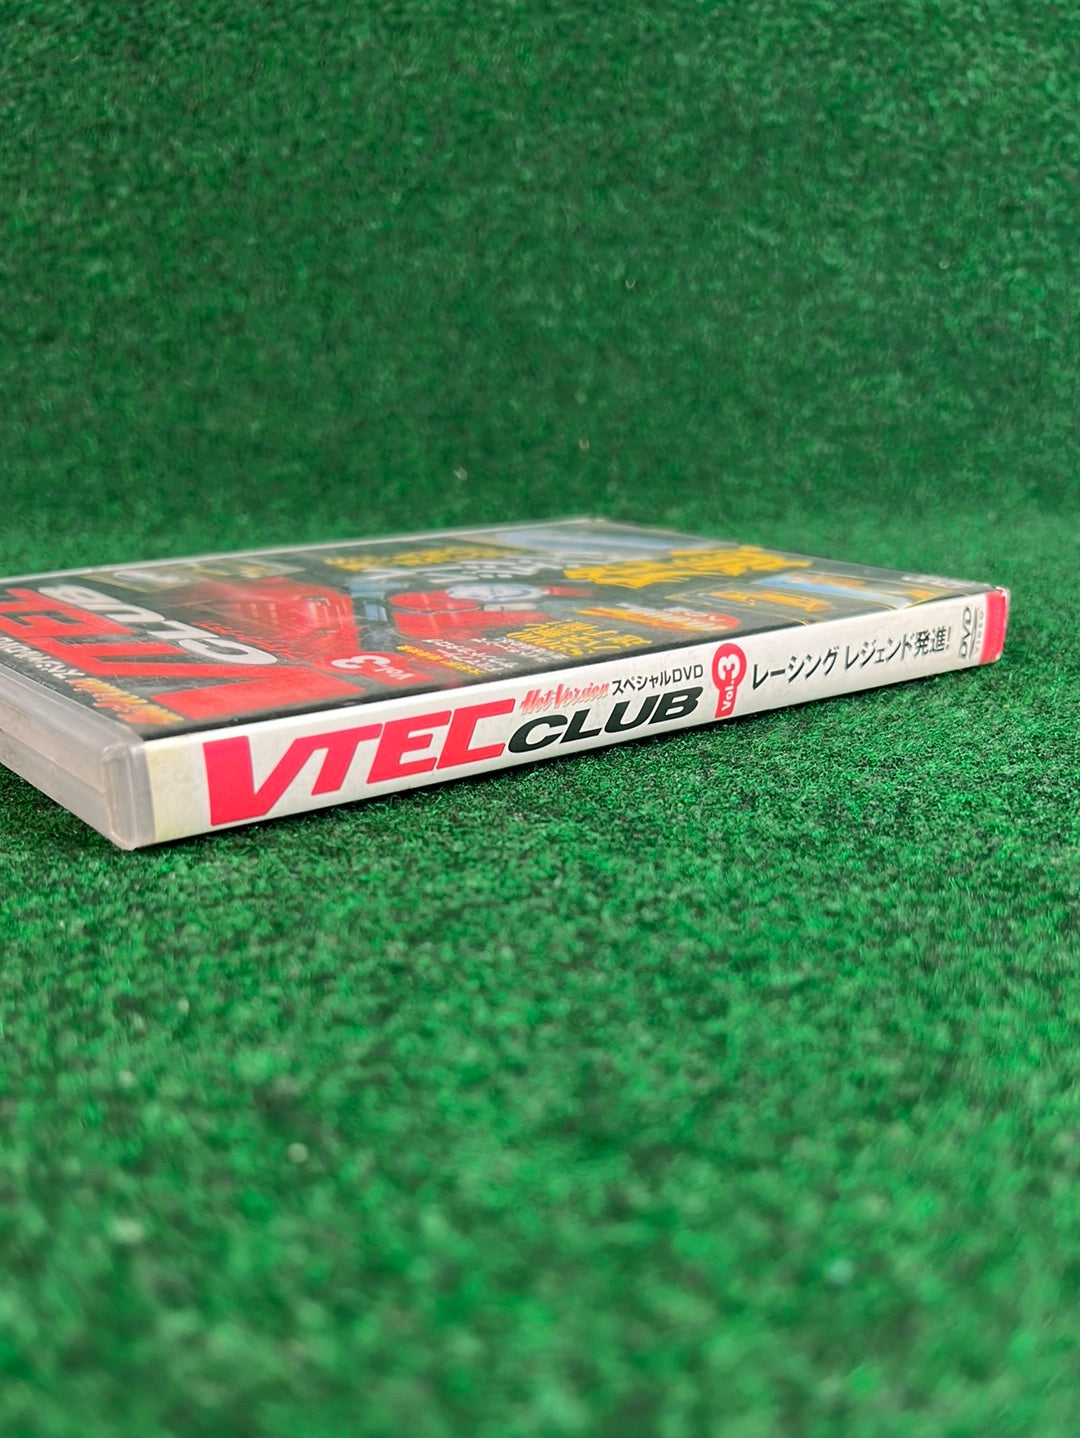 Hot Version DVD: VTEC CLUB - Vol. 3